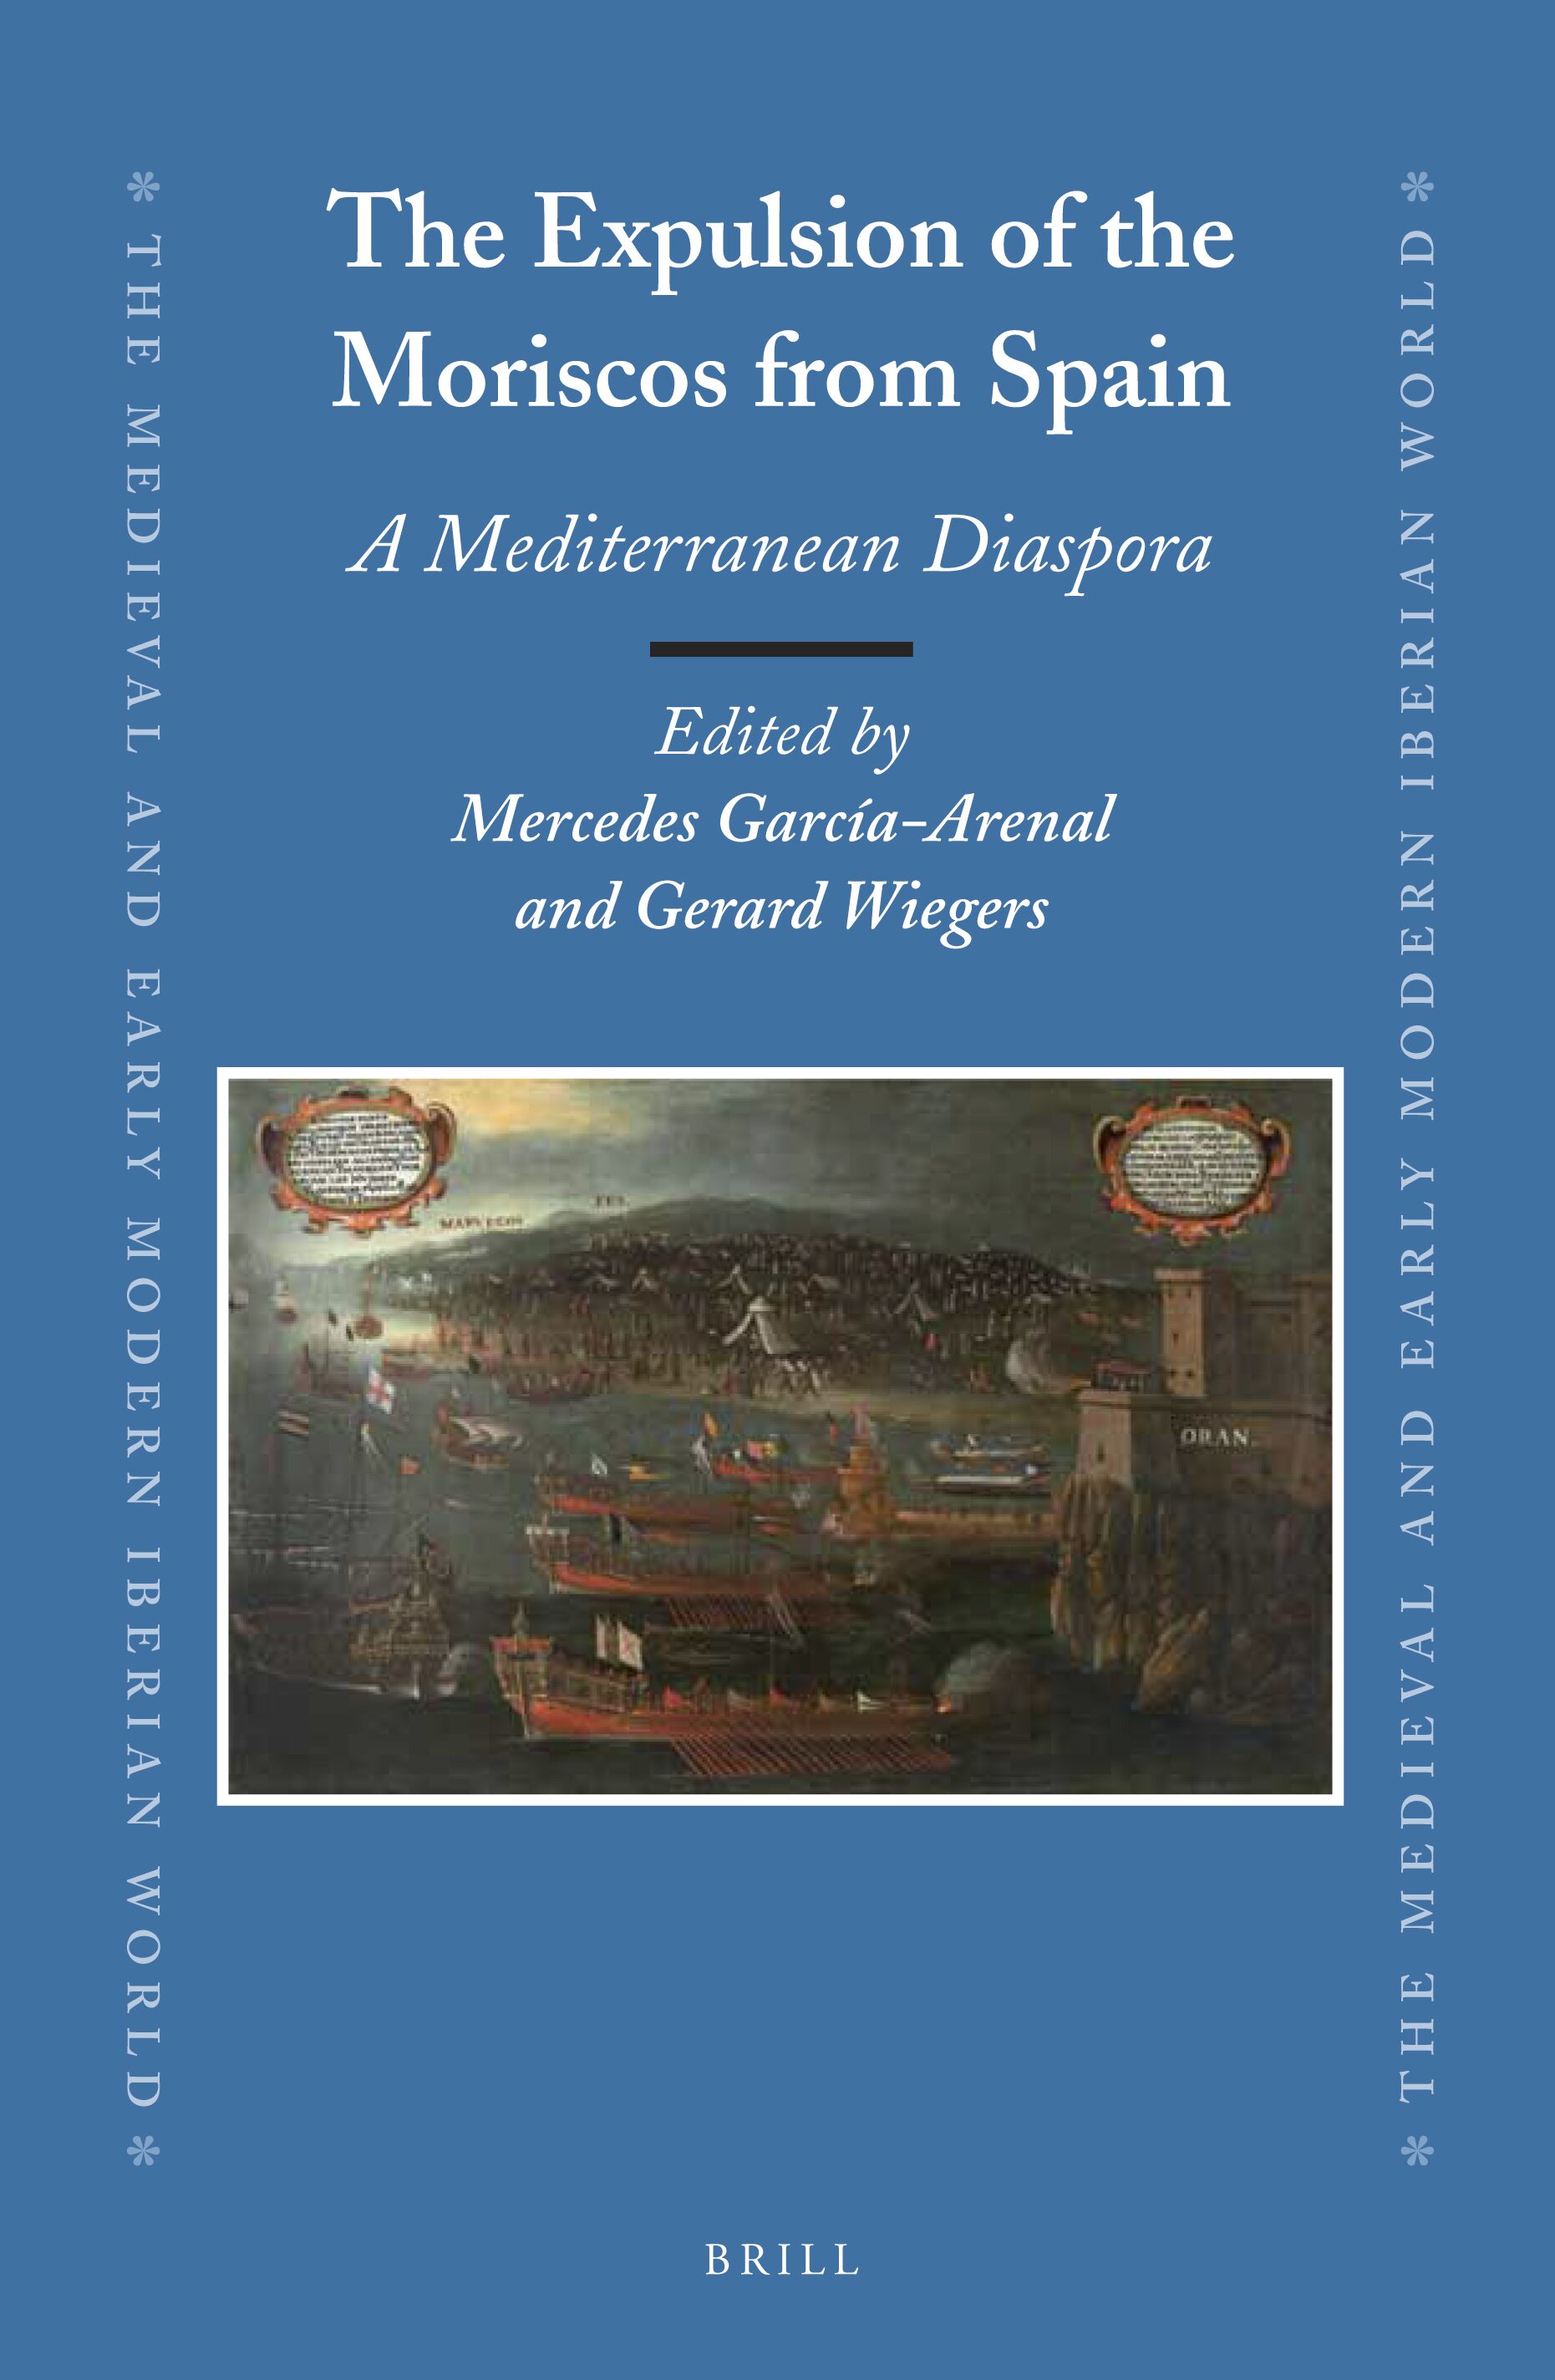 Imagen de portada del libro The expulsion of the Moriscos from Spain